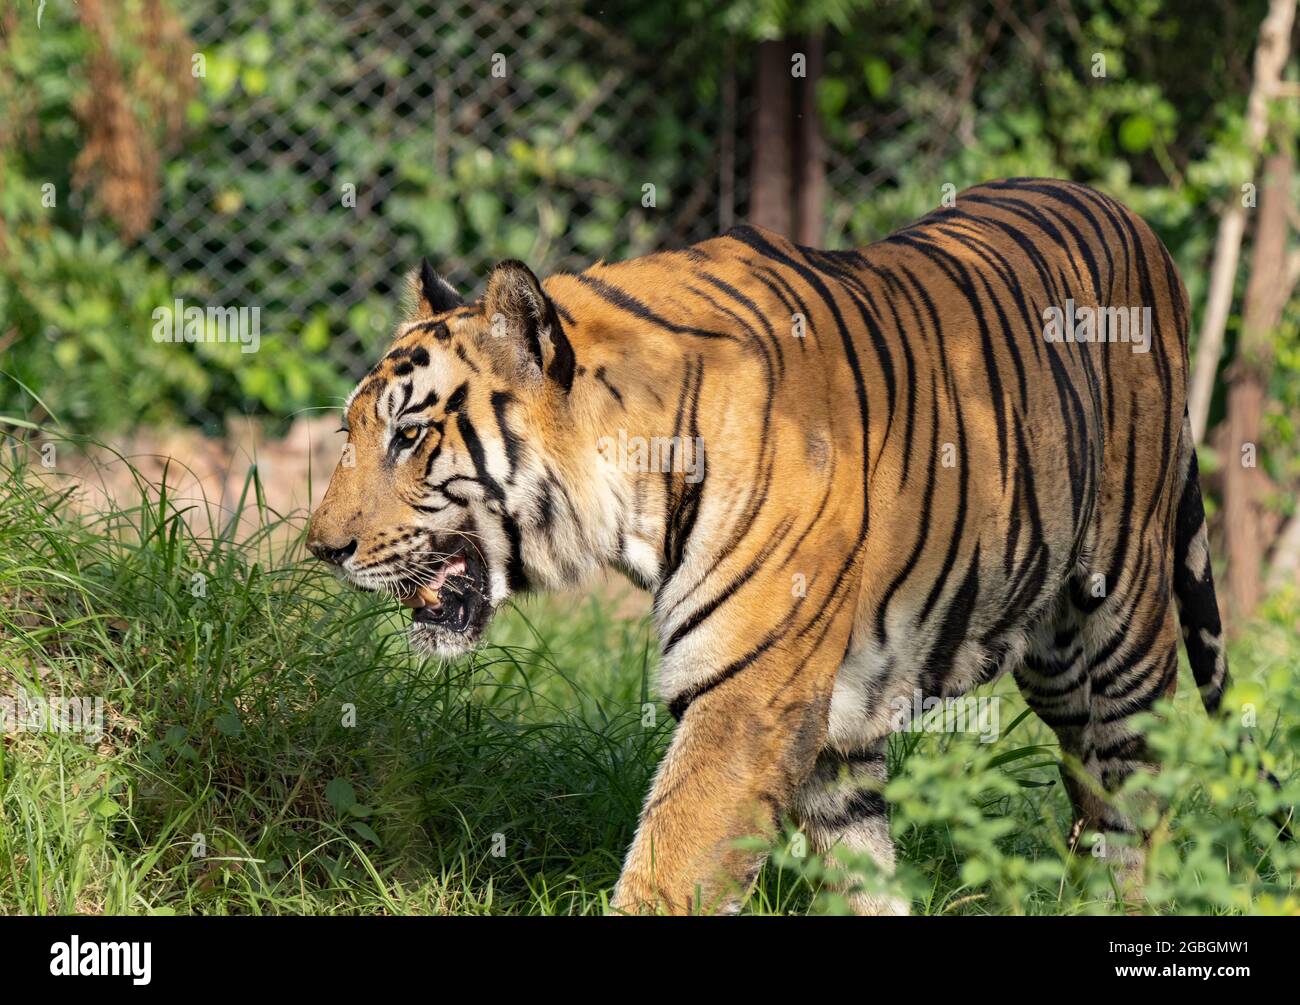 Grand tigre mâle dans l'habitat de la nature. Scène de la faune avec danger animal. Été chaud en Inde. Zone sèche avec le magnifique tigre indien, Panthera tigris. Banque D'Images